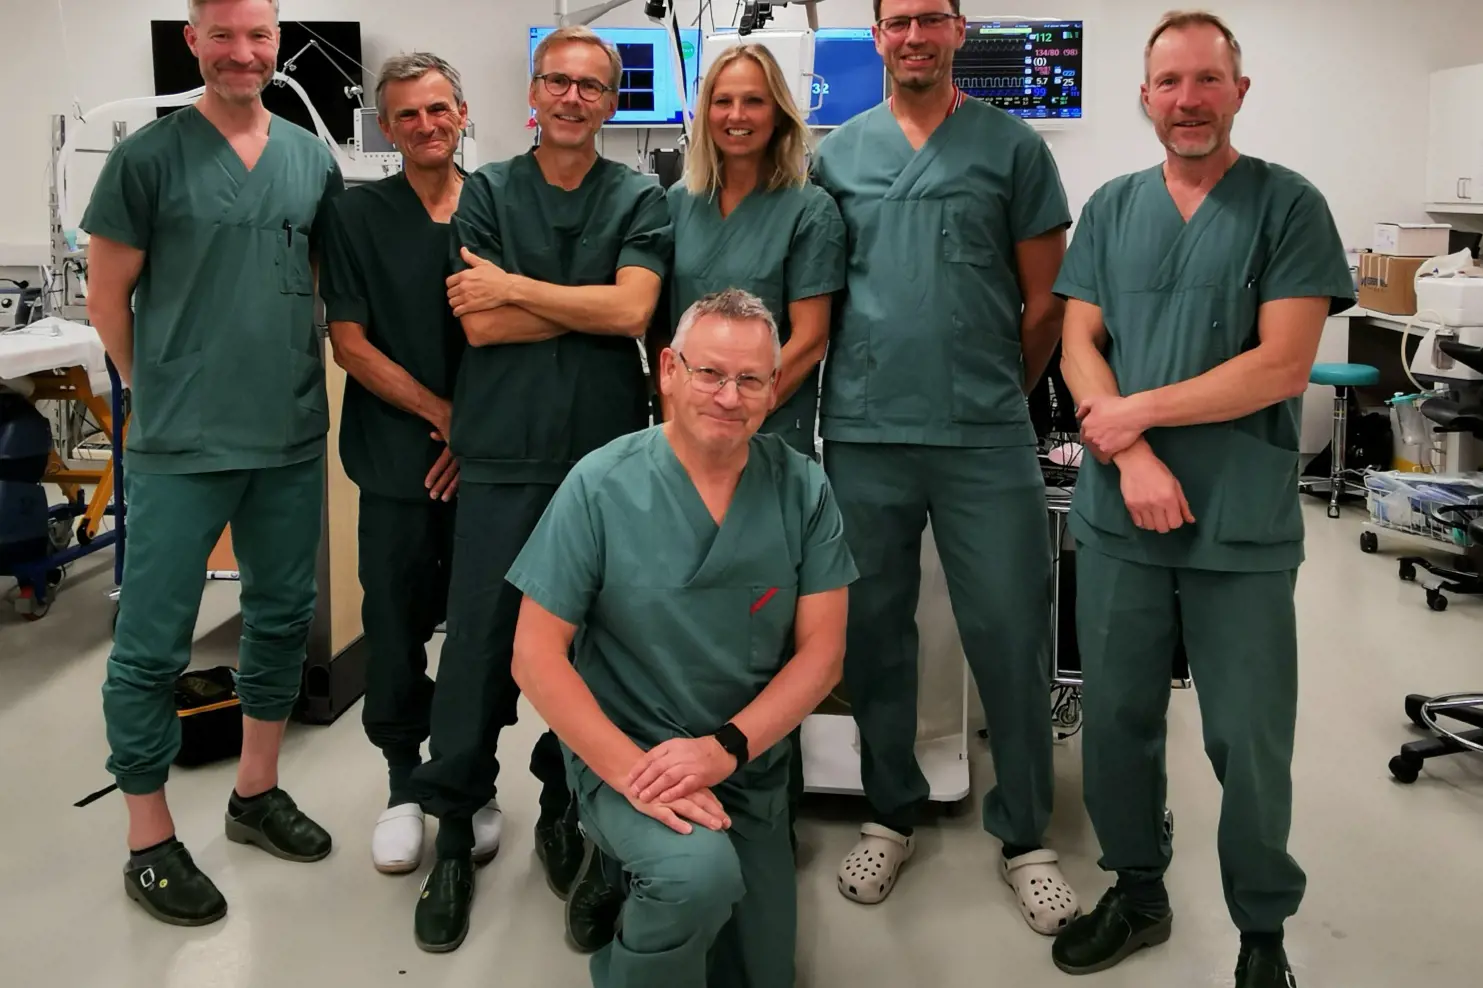 sju personer fra operasjonsstue som står samlet og smiler